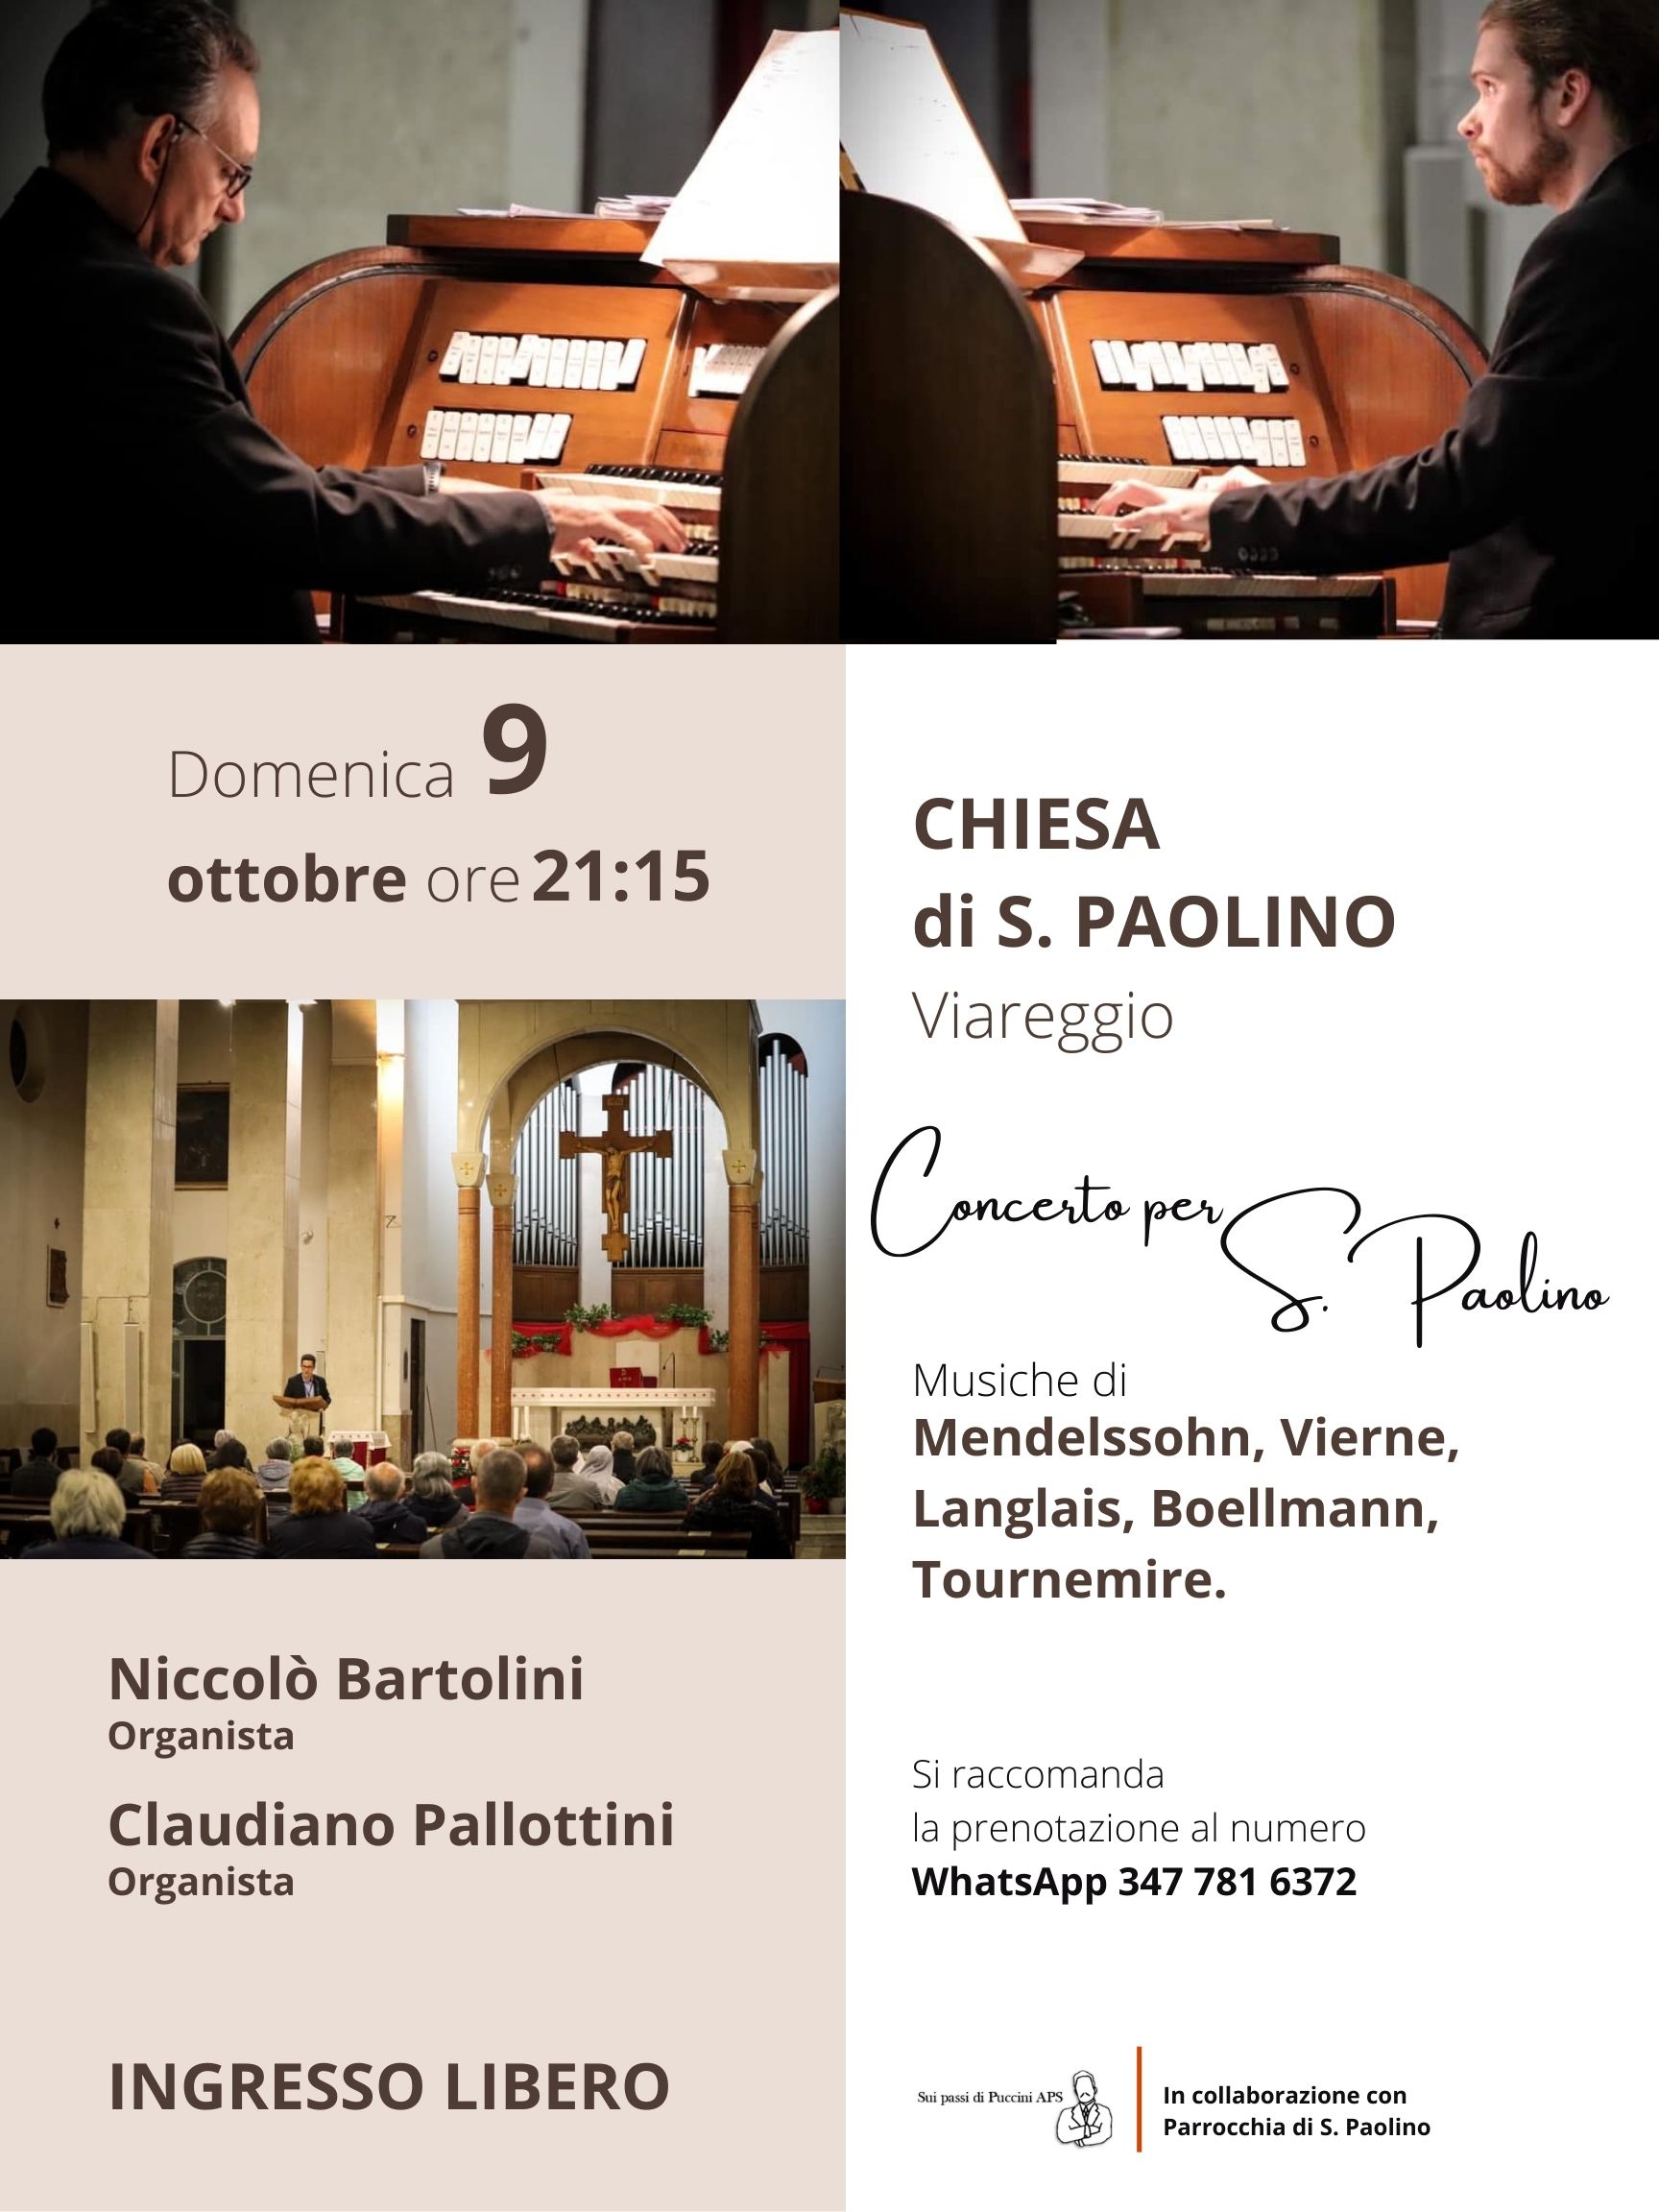 Per S. Paolino, a Viareggio, due organisti in concerto